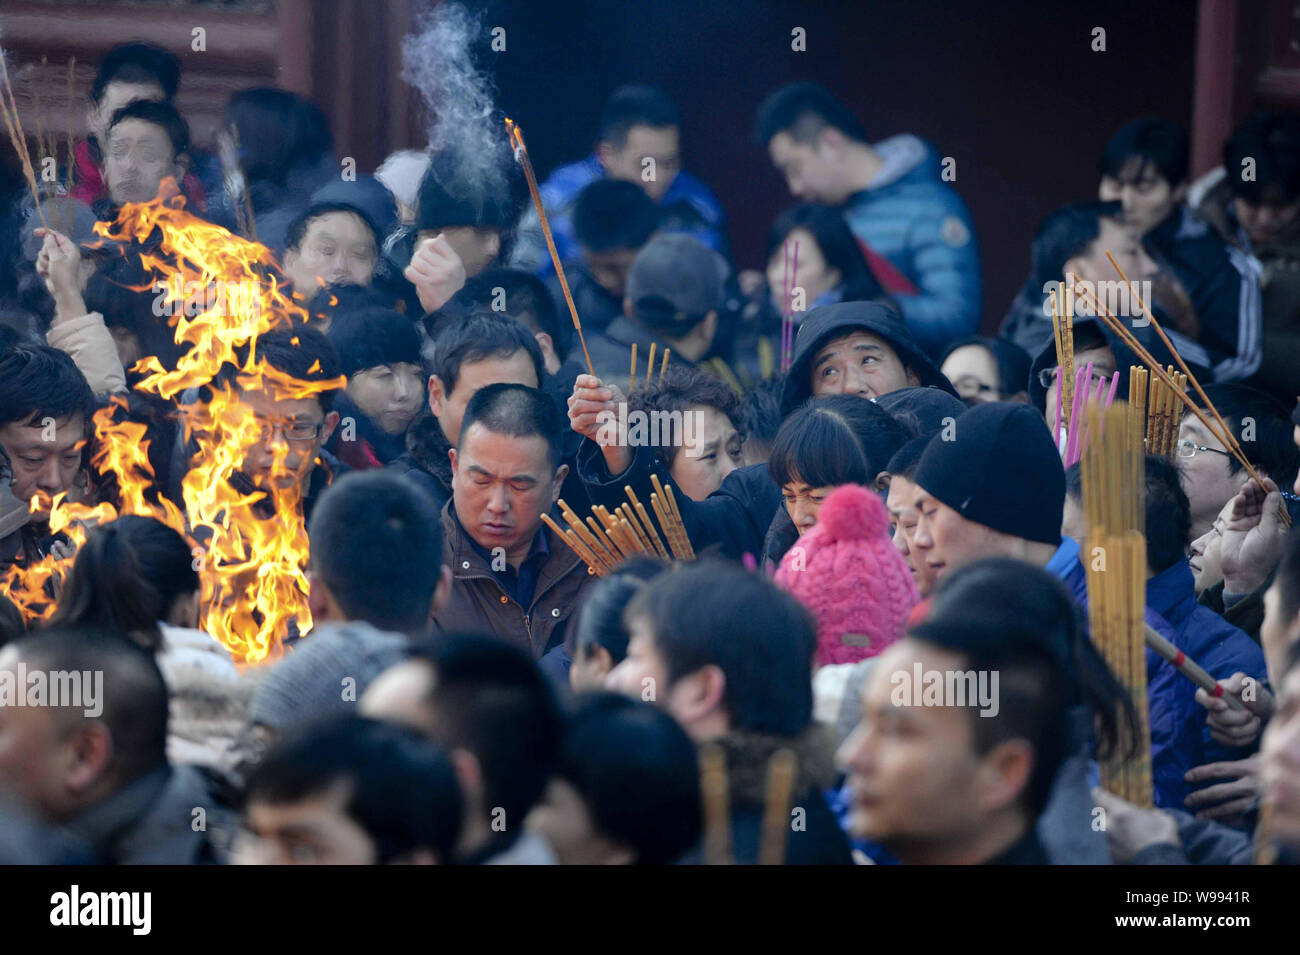 Les touristes chinois et les résidents de la brûler de l'encens pour prier à la Temple de Yonghe, aussi connu comme le Palais de la paix et d'harmonie, Lama Temple Yonghe Lam Banque D'Images